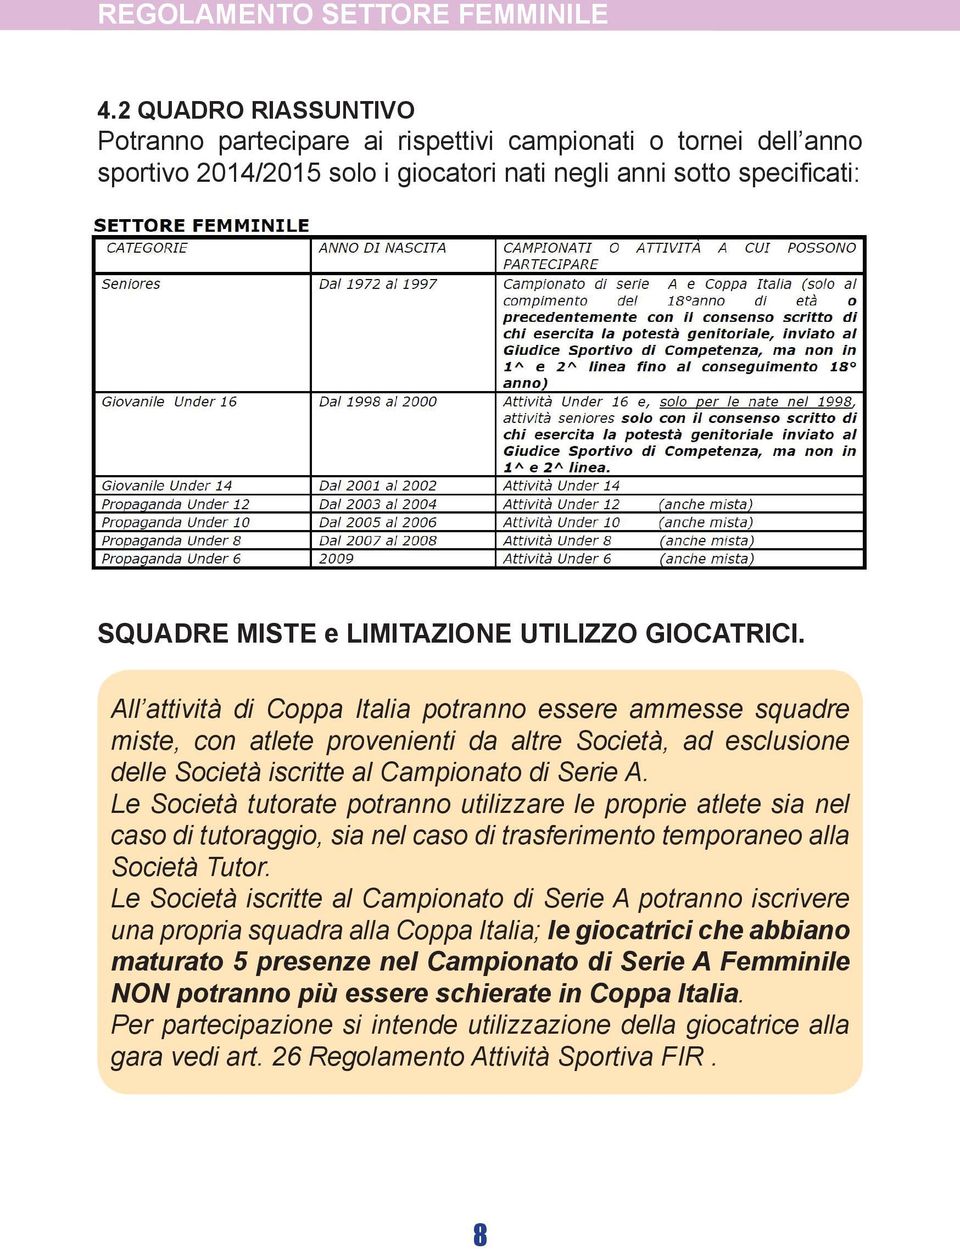 GIOCATRICI. All attività di Coppa Italia potranno essere ammesse squadre miste, con atlete provenienti da altre Società, ad esclusione delle Società iscritte al Campionato di Serie A.